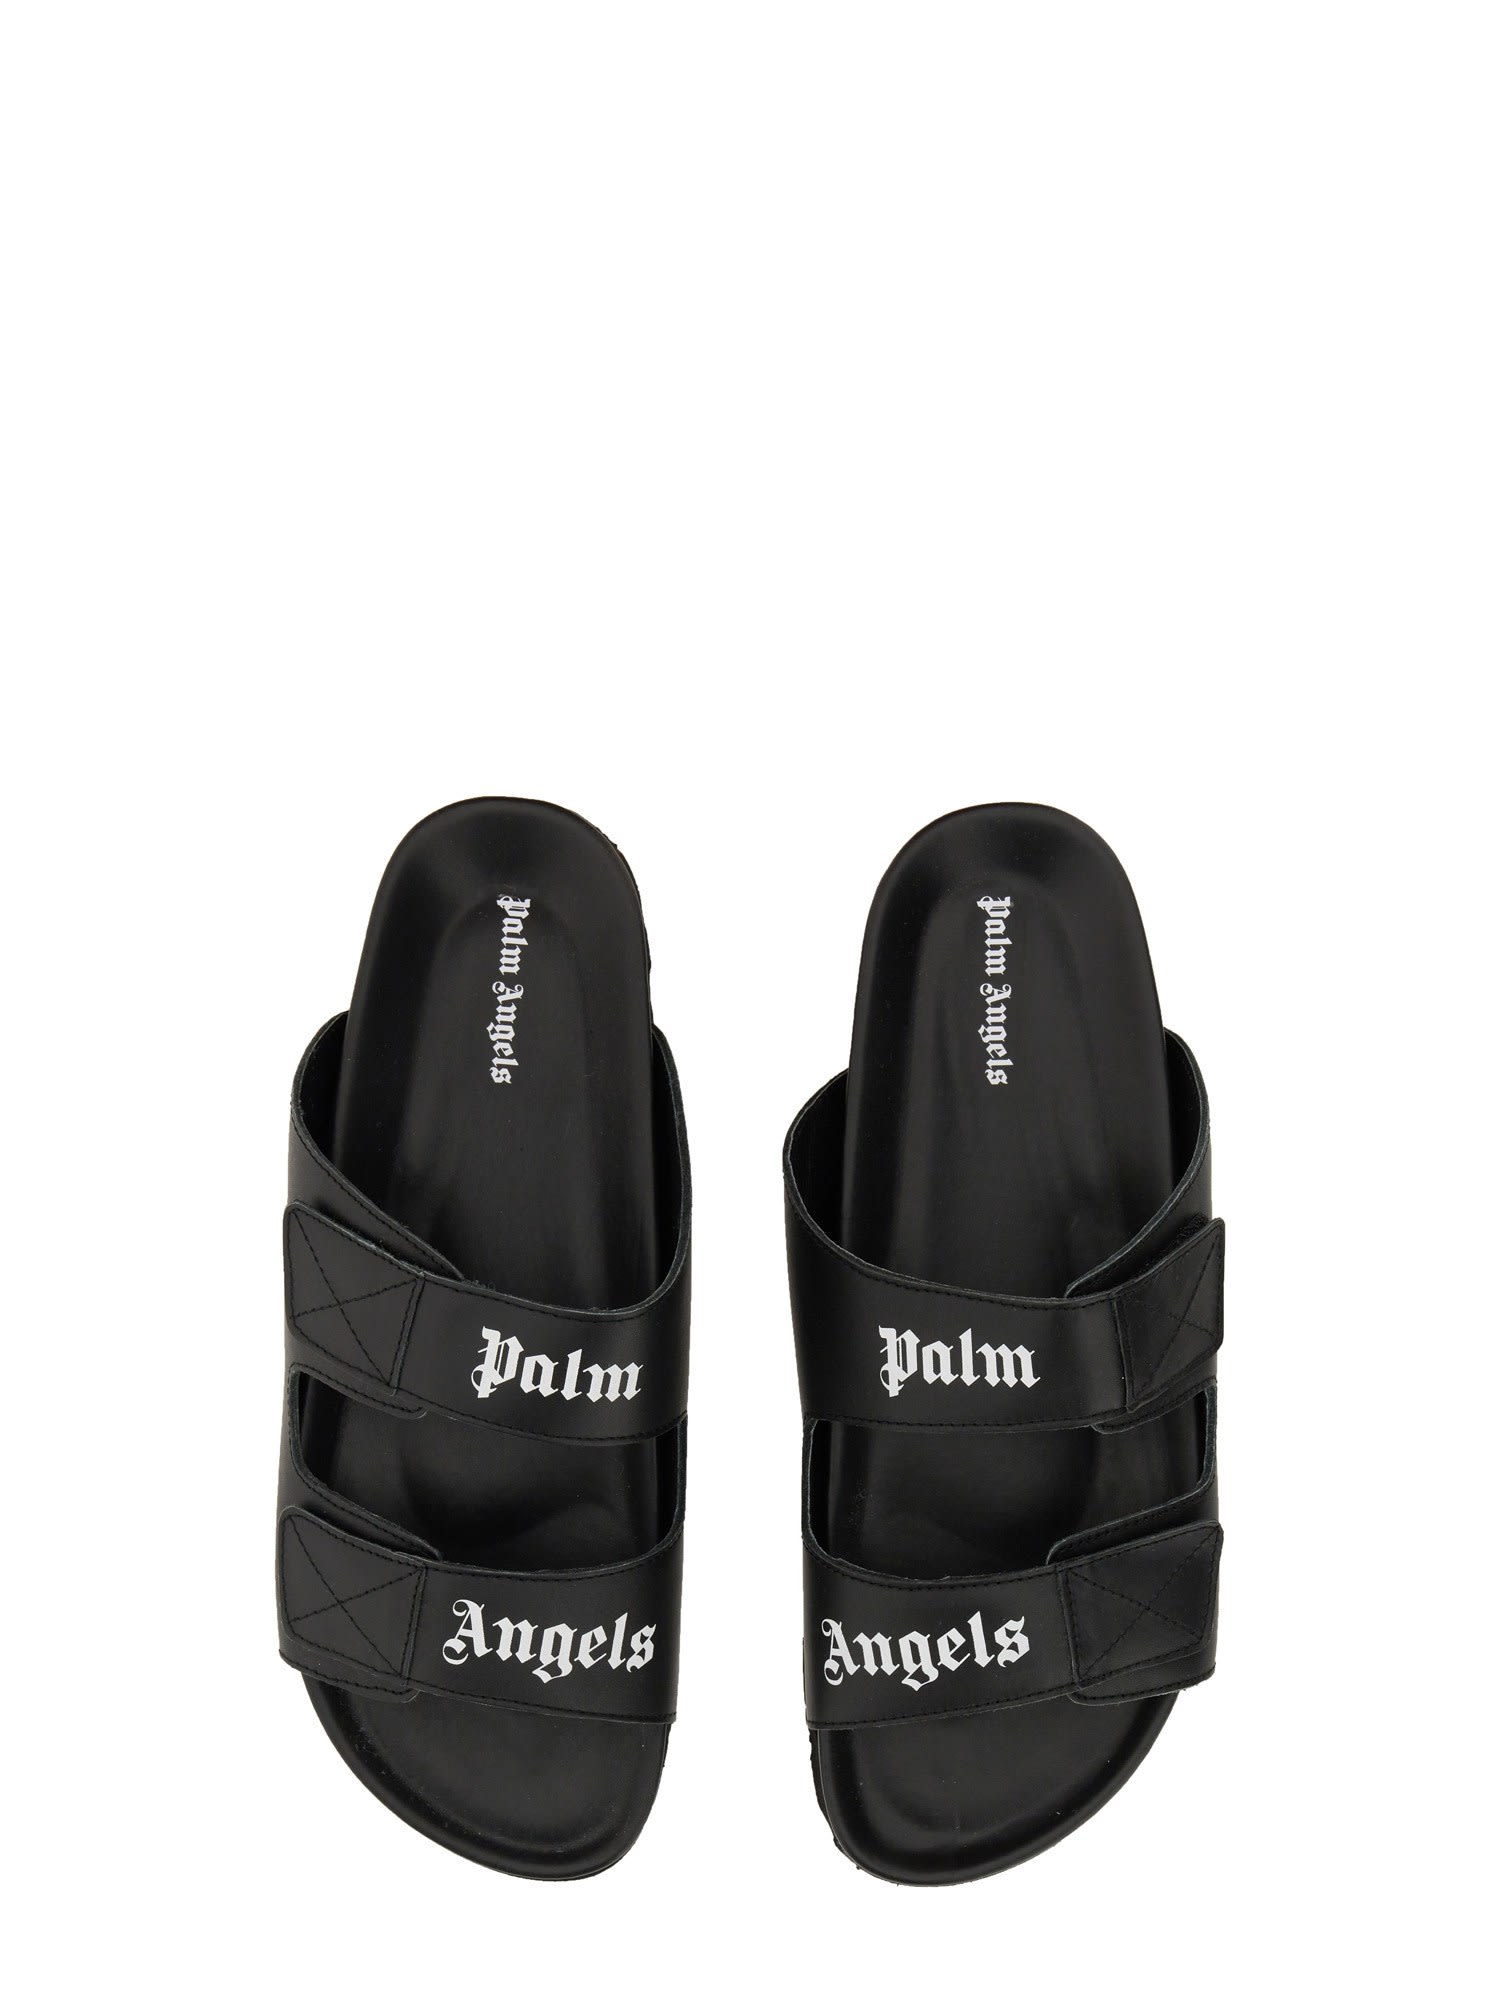 PALM ANGELS, Black Men's Sandals